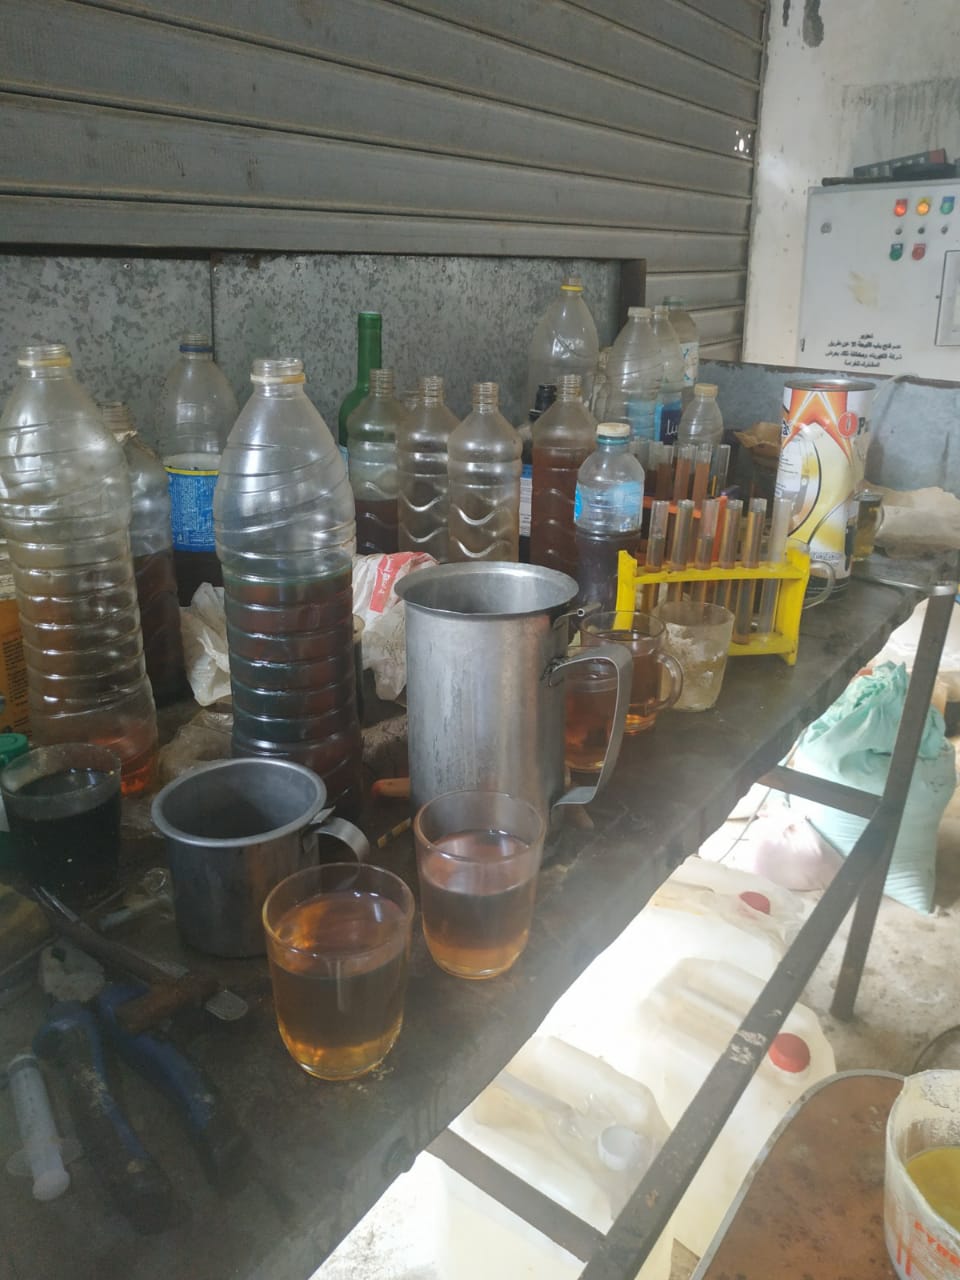   تموين الإسكندرية: ضبط مصنع لاعادة تصنيع الزيوت الفاسدة بمواد كيميائية خطرة (صور)